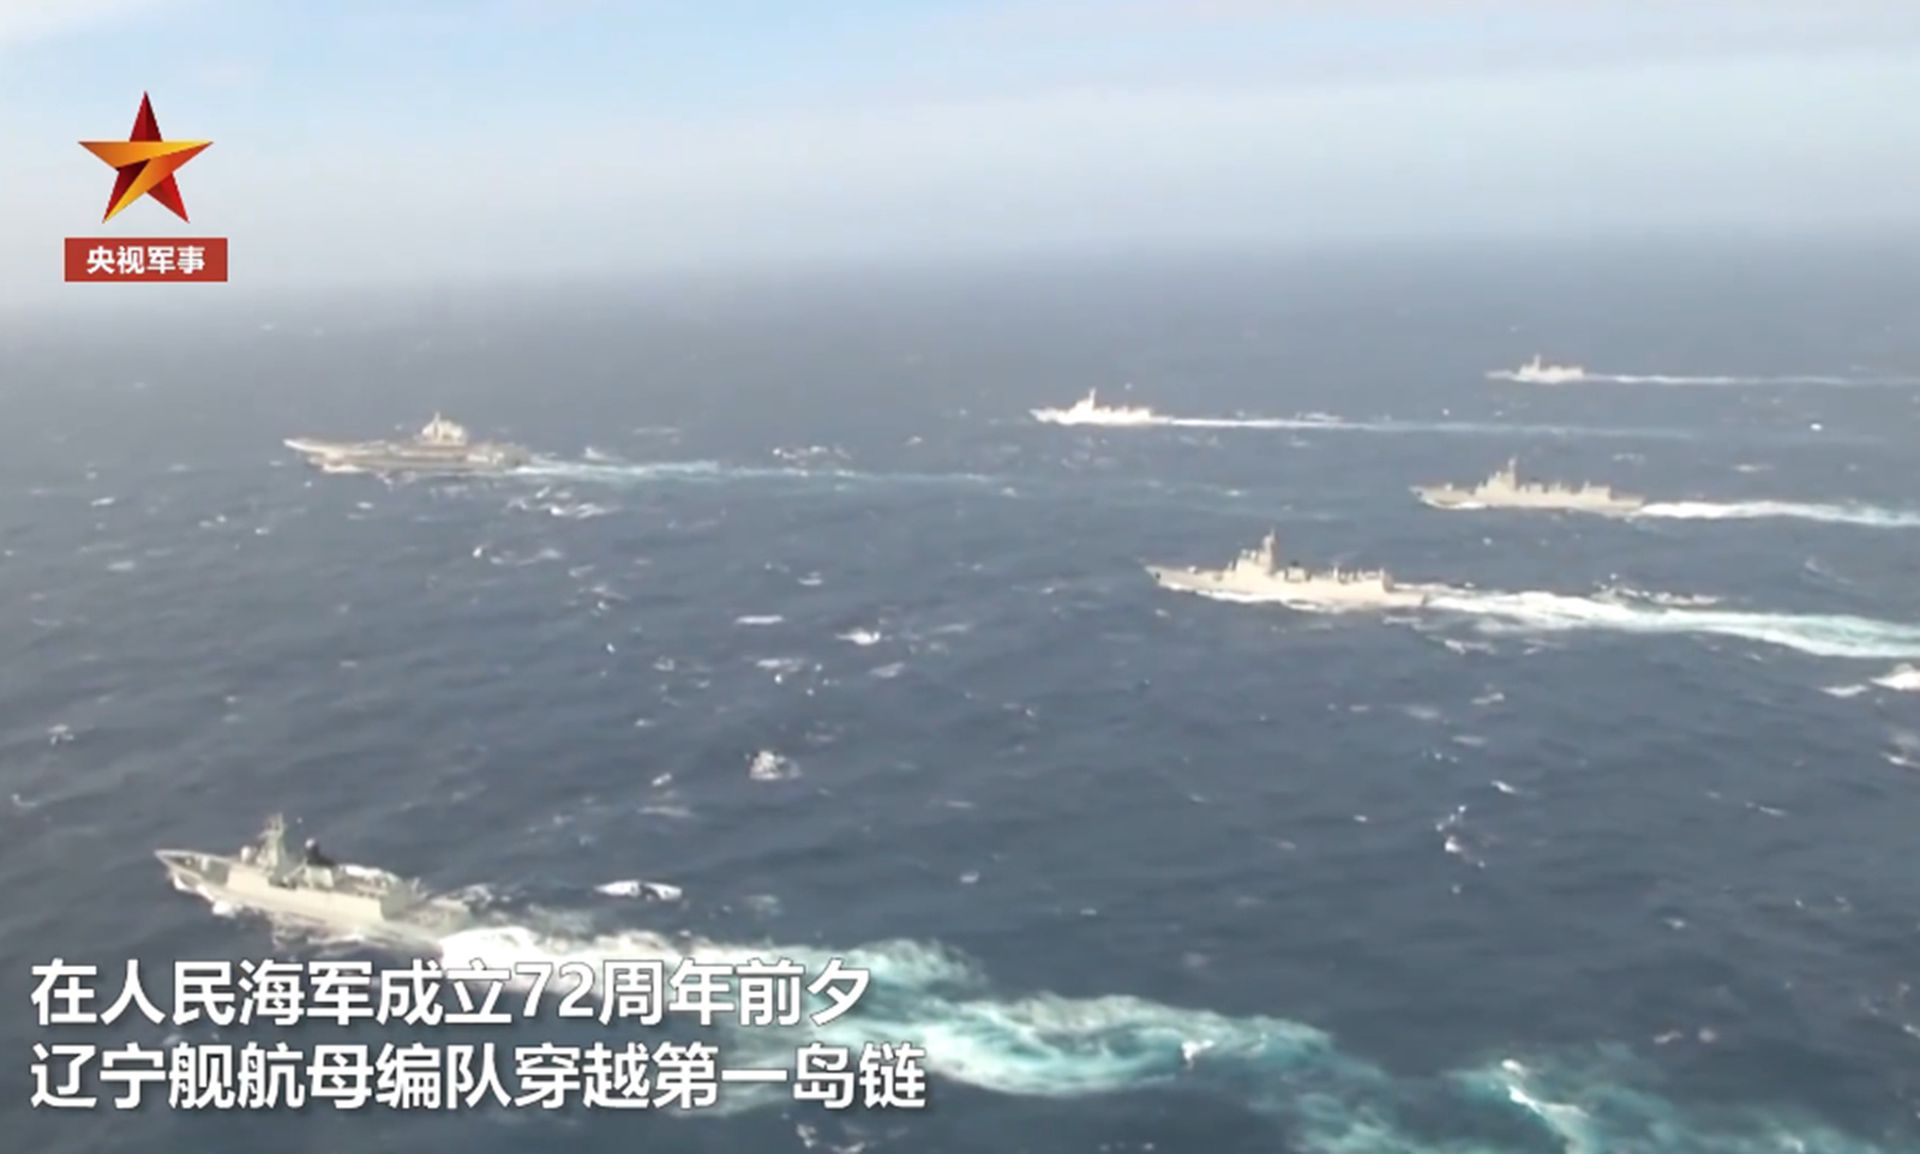 遼寧艦被傳“失去動力被拖回港”  最新航跡曝光